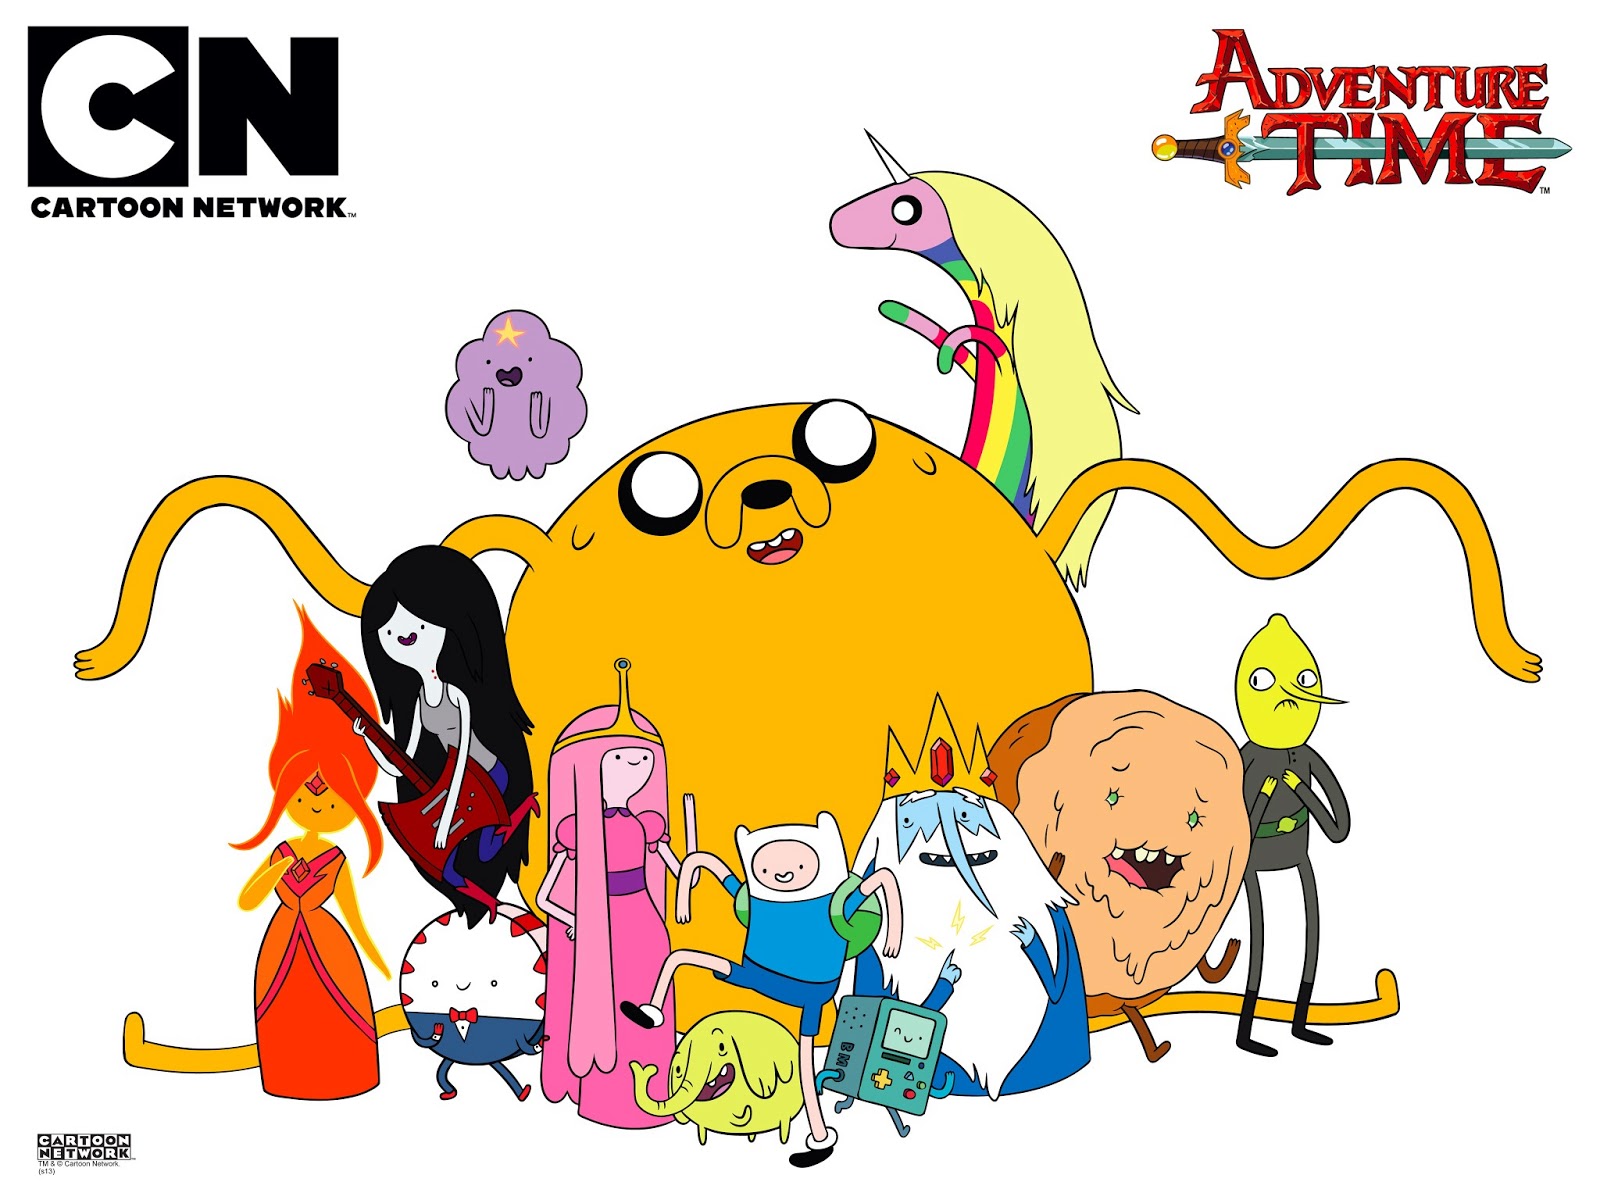 Adventure time альтернативные вселенные